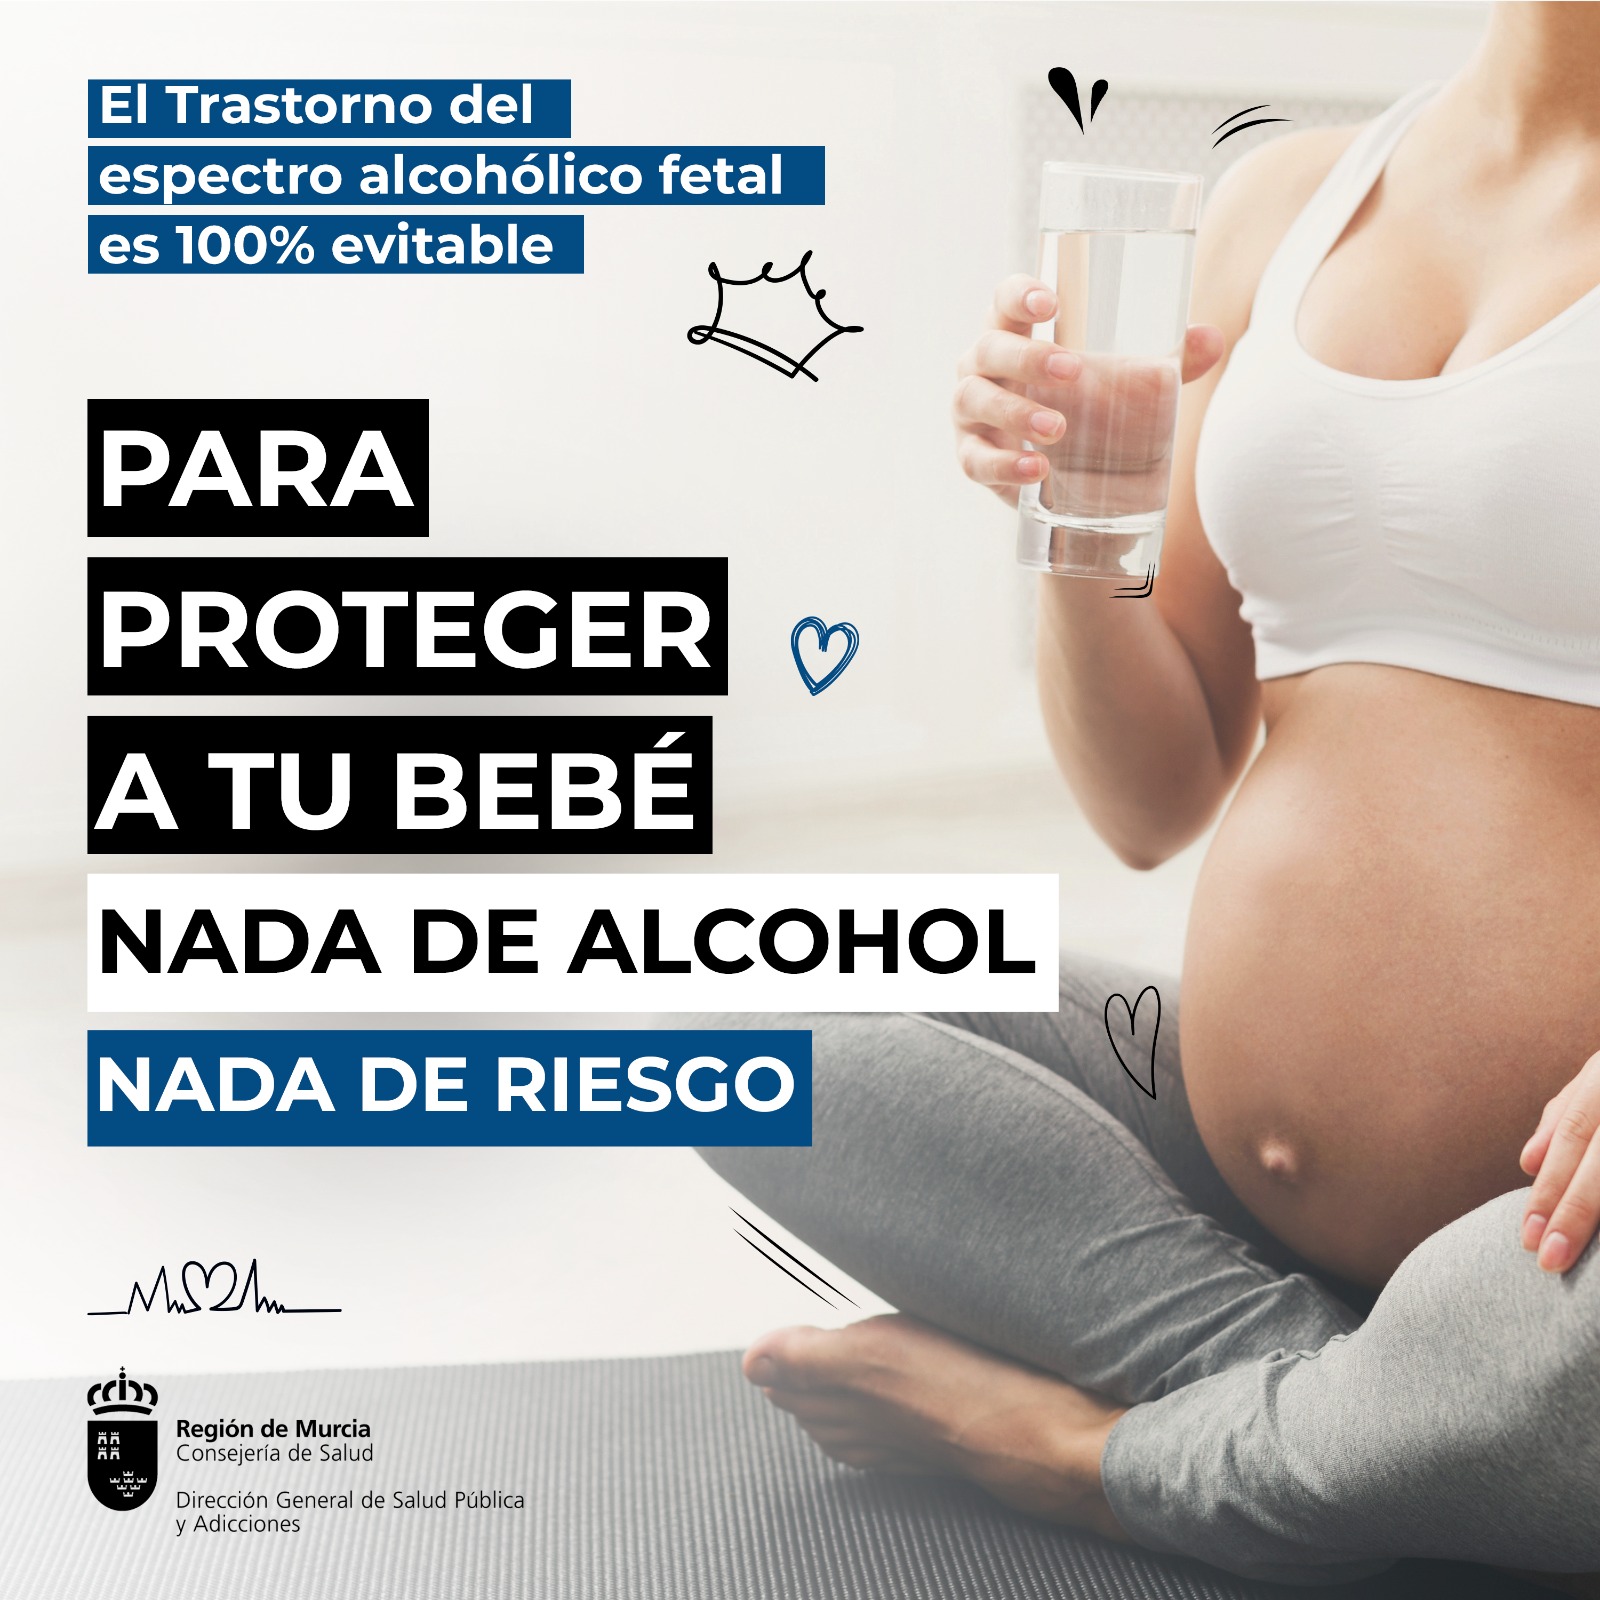 La Consejería de Salud ha diseñado una campaña informativa dirigida a la población en general y específicamente a mujeres embarazadas o que se planteen estarlo cuyo objetivo es prevenir el Trastorno del Espectro Alcohólico Fetal (TEAF)